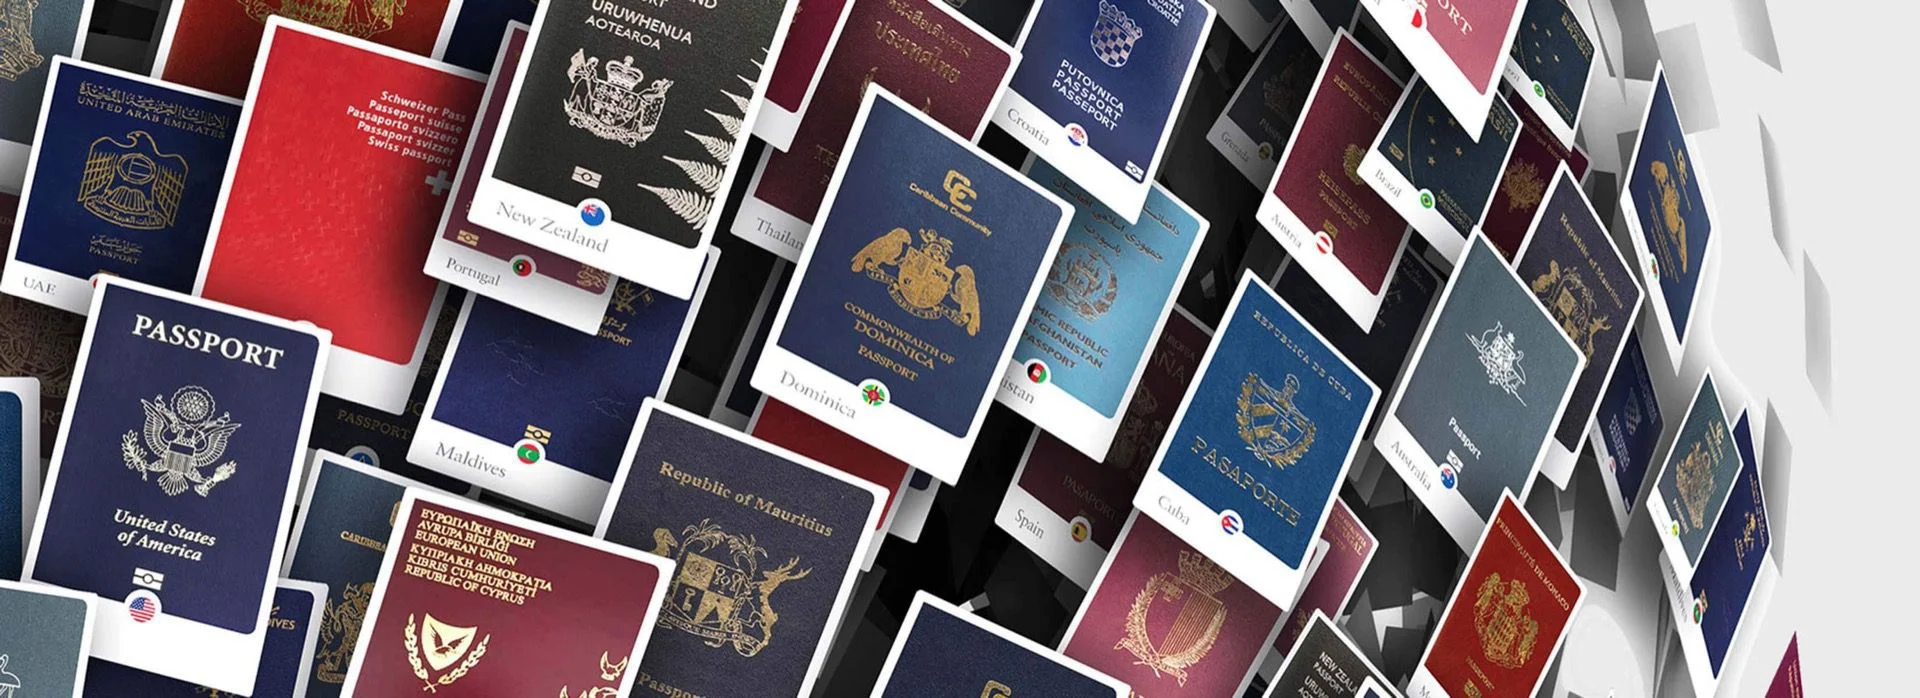 موقع مذهل يعطيك معلومات حول جواز سفرك لأول مرة ستعرفها